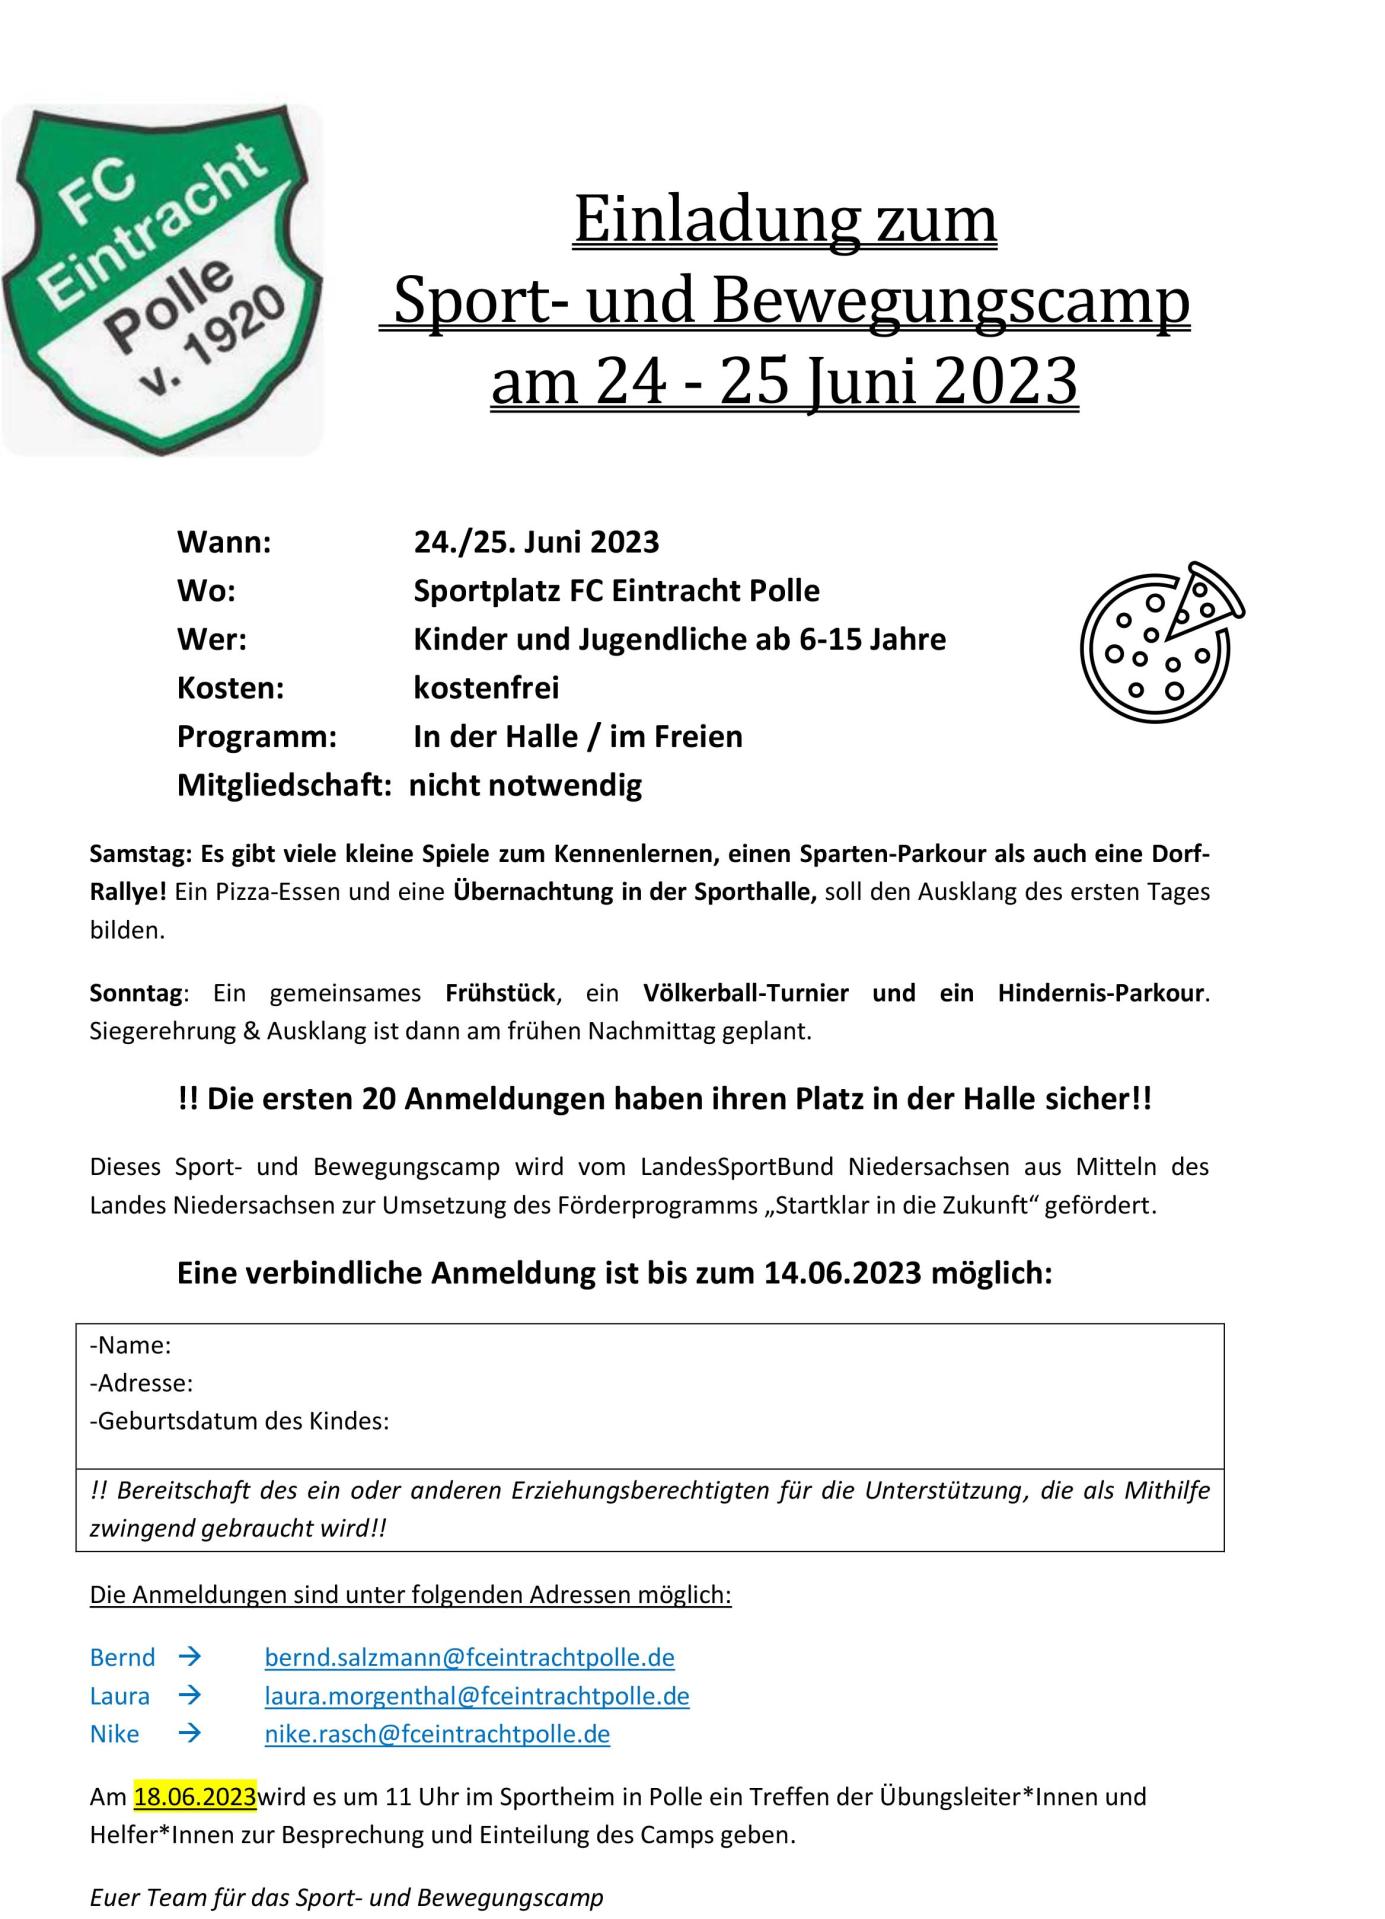 2023.05.21 FC Eintracht Polle - Einladung zum Sport- und Bewegungscamp